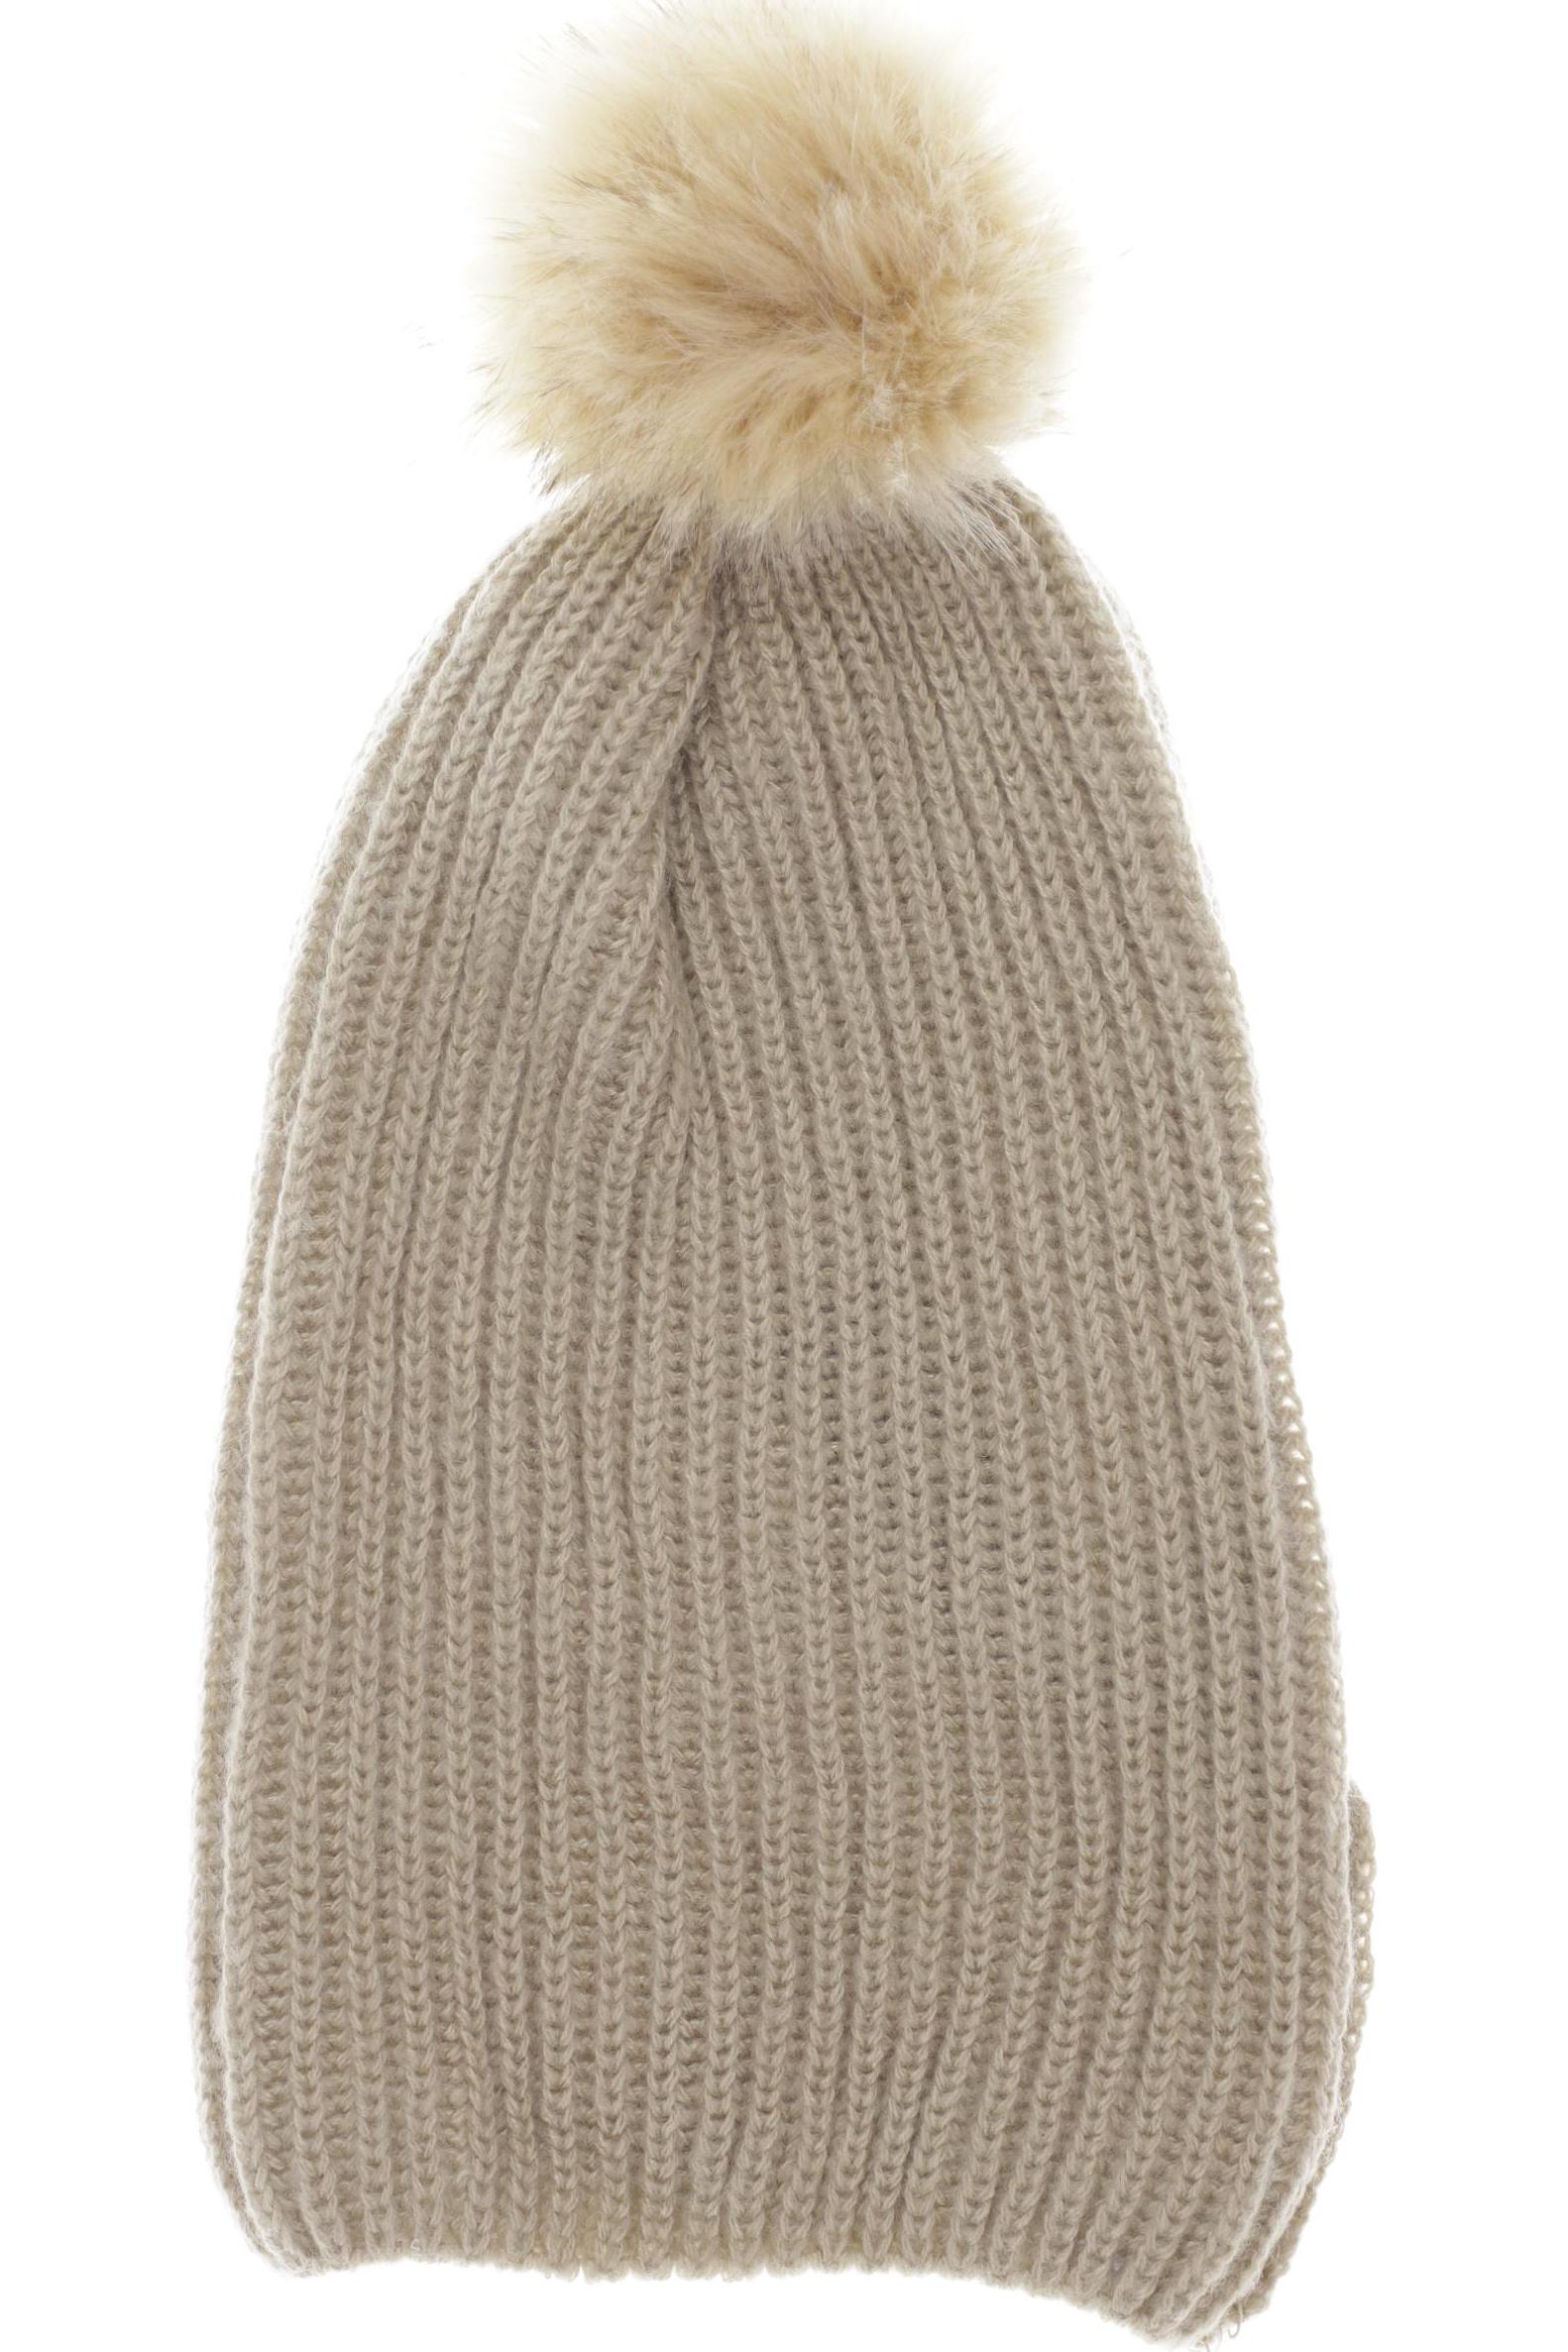 Zara Damen Hut/Mütze, beige, Gr. 56 von ZARA